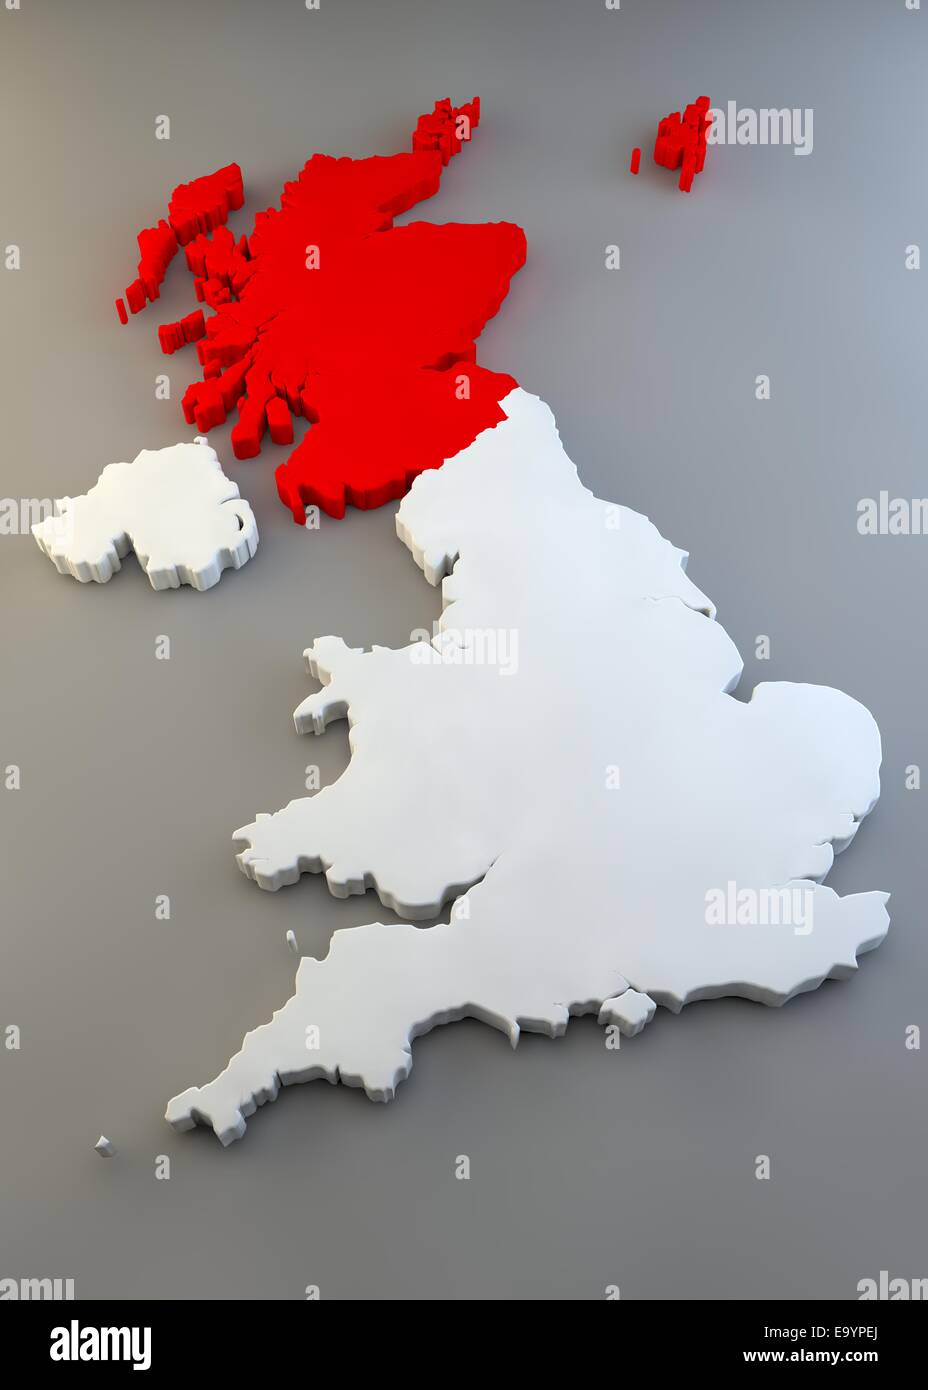 Angleterre, Ecosse, Pays de Galles et Irlande du Nord texture map Banque D'Images